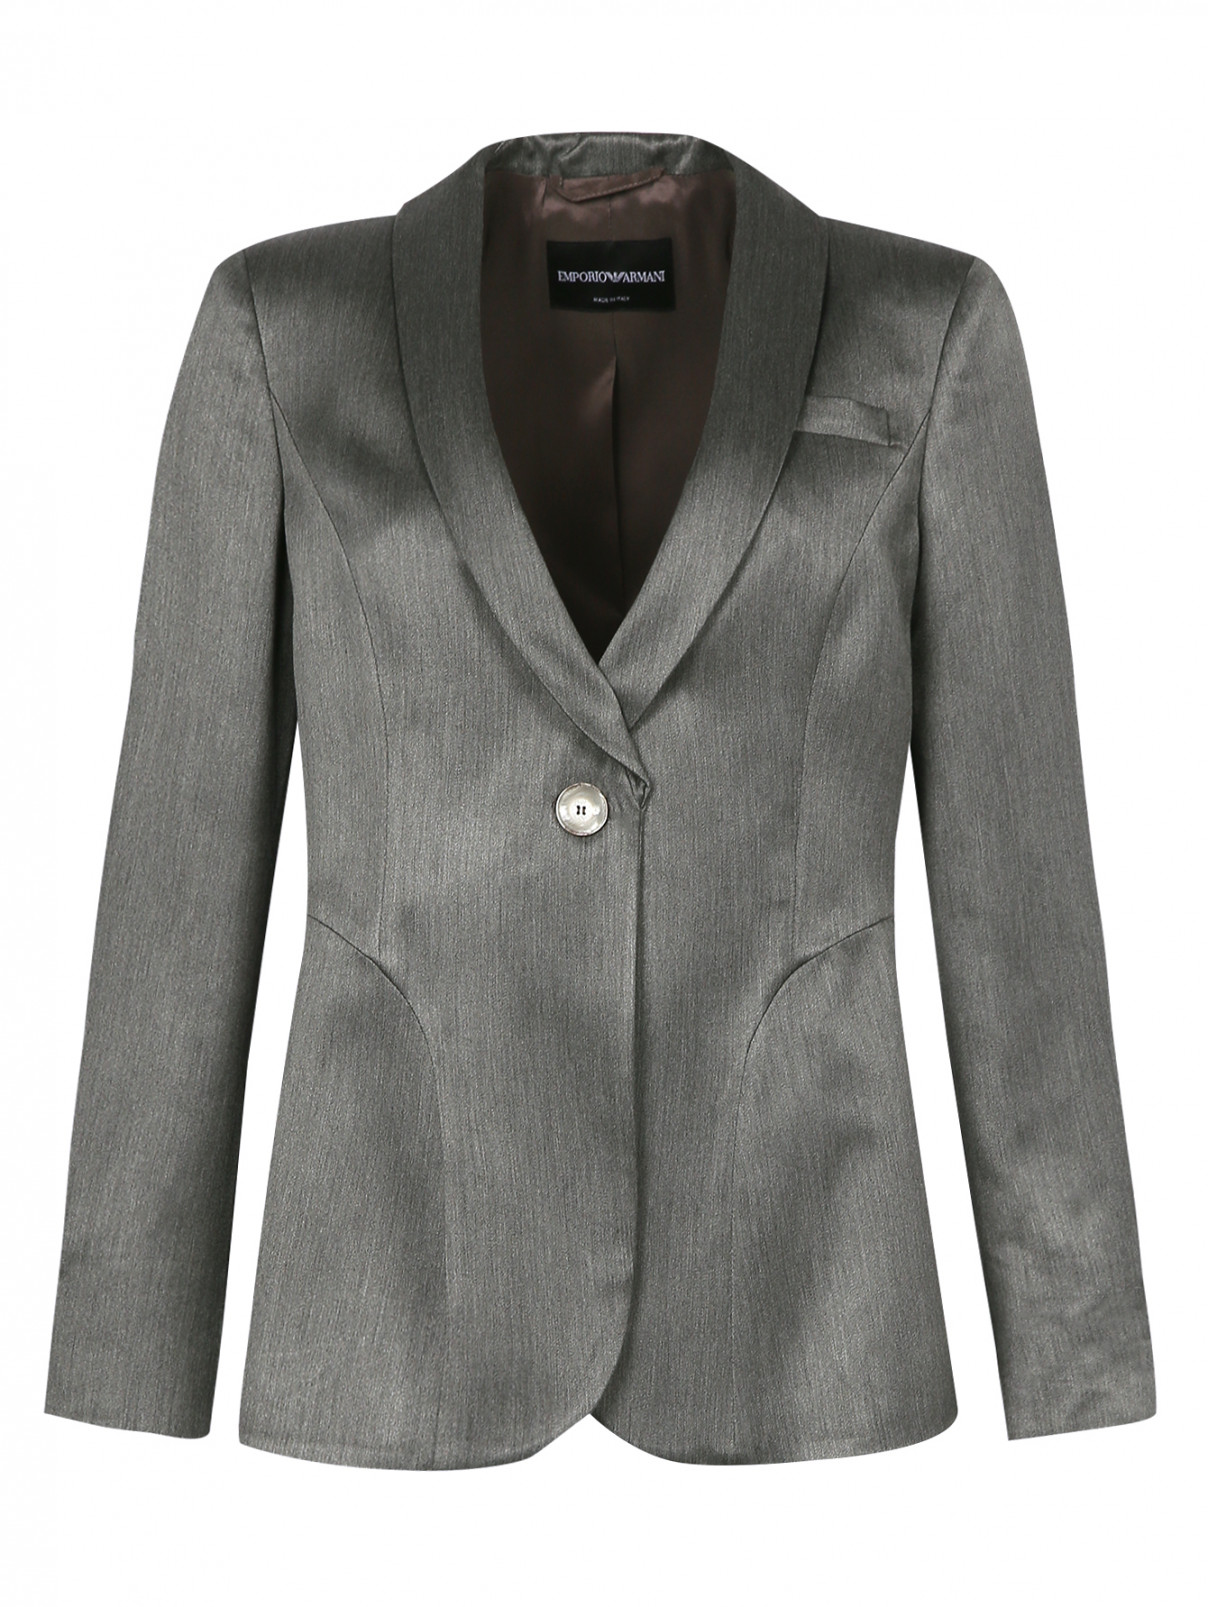 Однобортный жакет с боковыми карманами Emporio Armani  –  Общий вид  – Цвет:  Серый